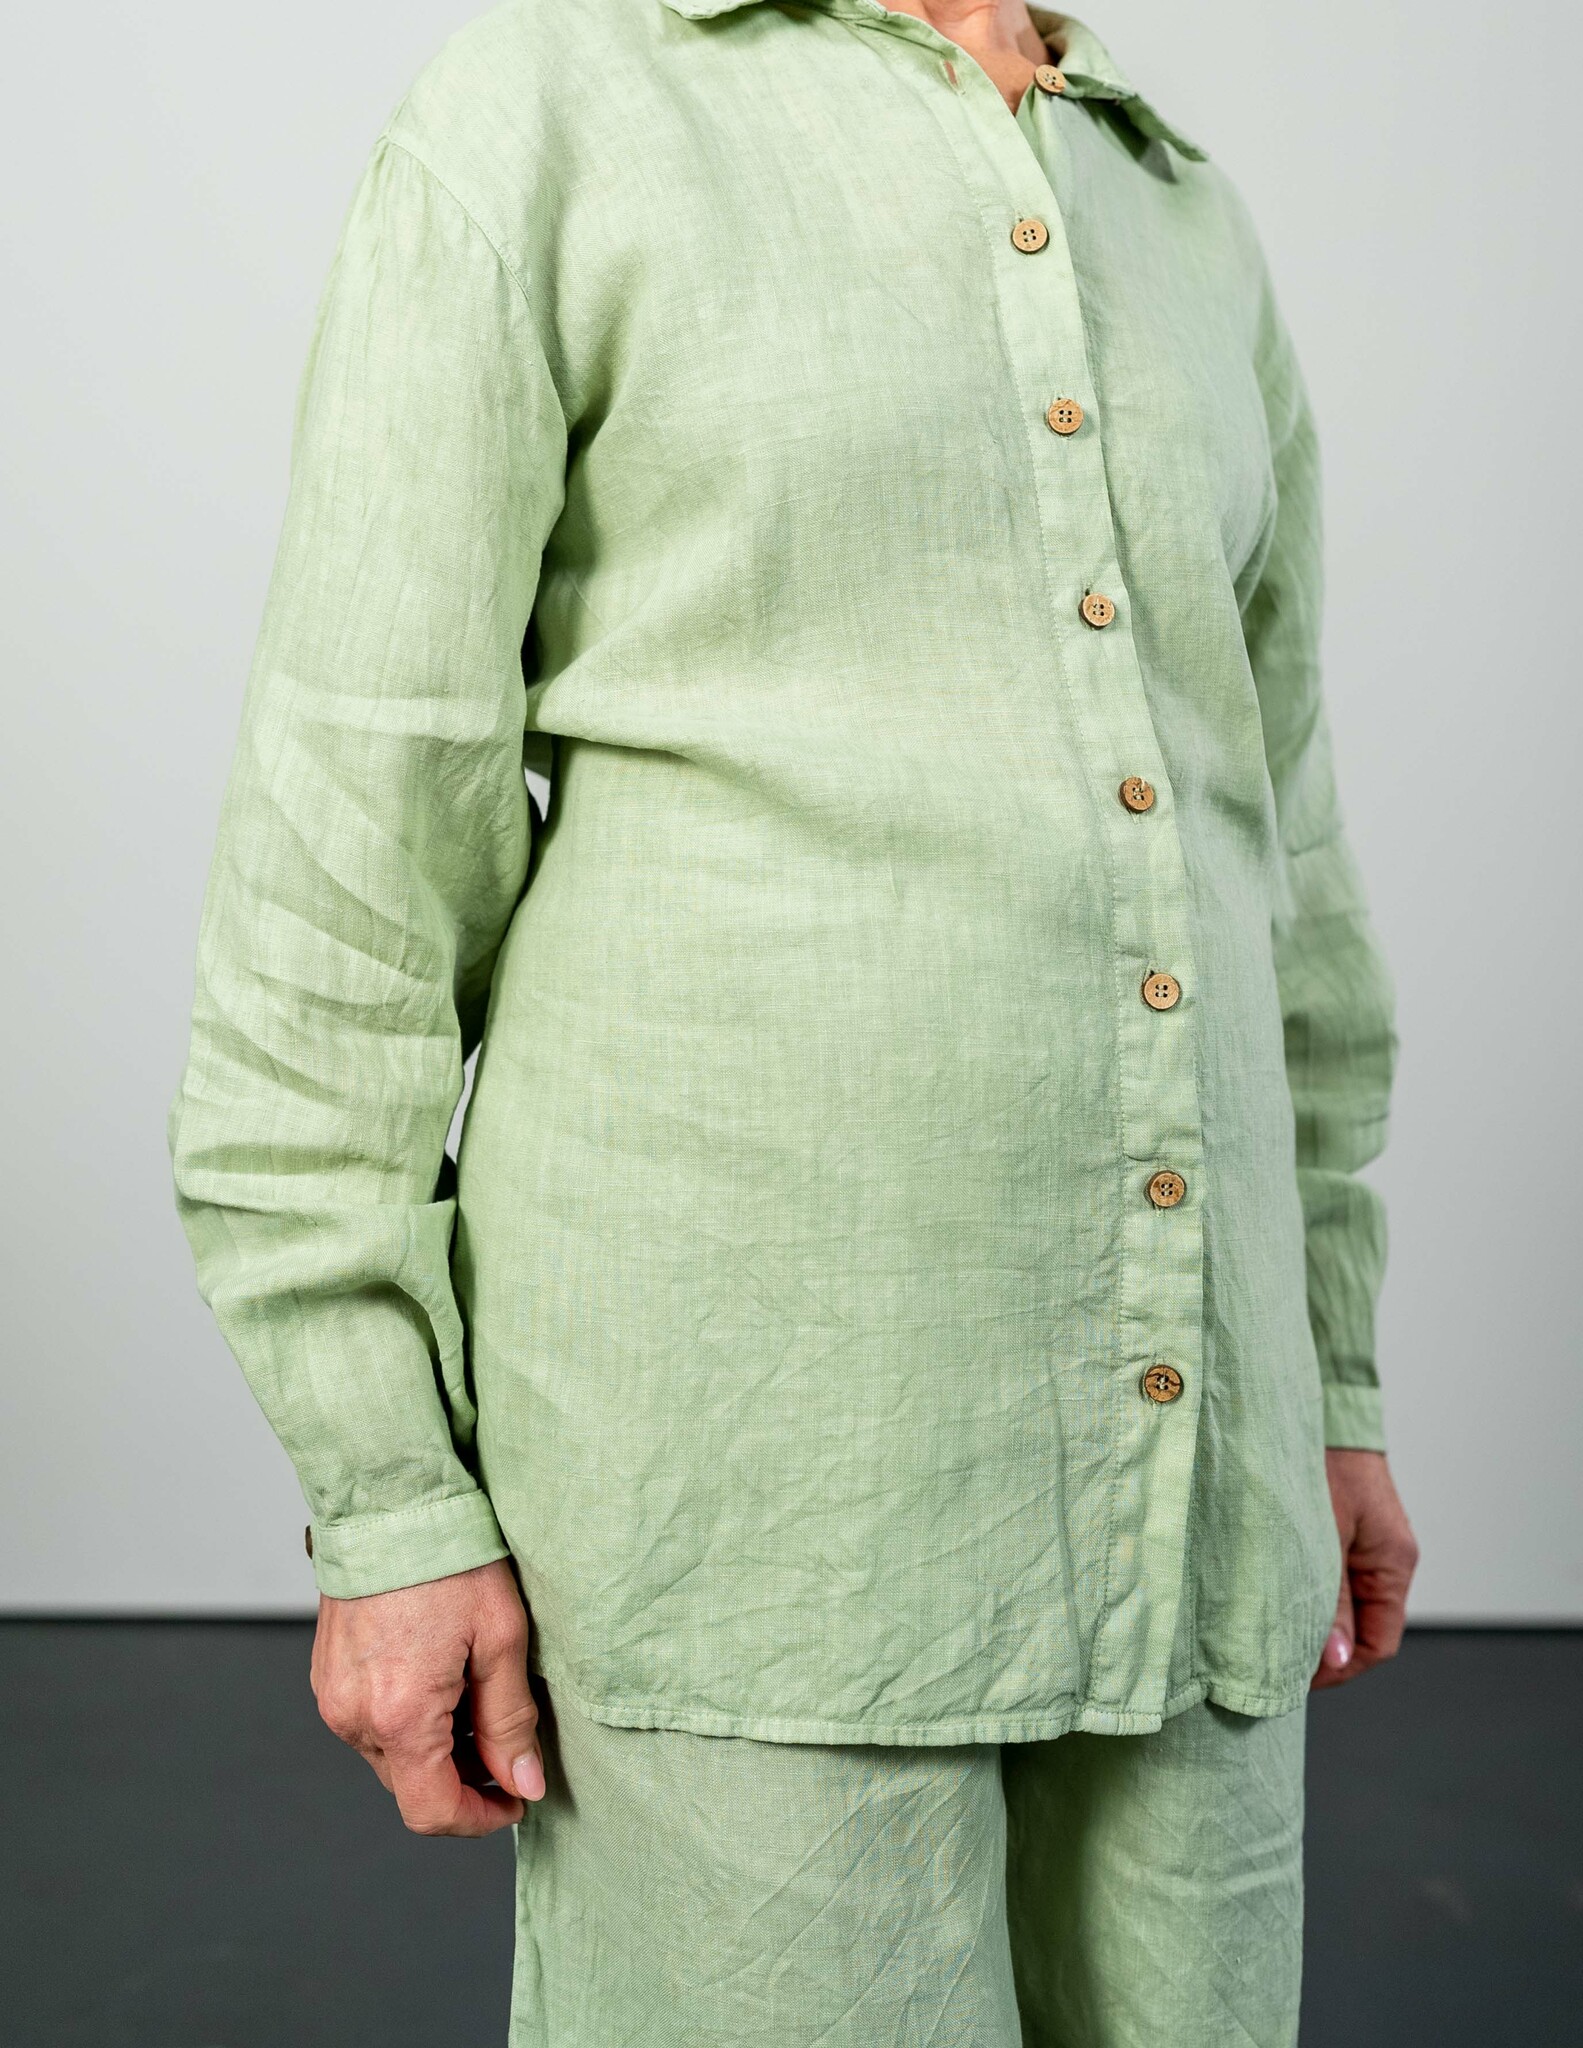 Hållbar linneskjorta grön I Grön linneskjorta i hållbart material I Skjorta i linne dam I Linneskjorta med knappar I Gröna linneskjortor dam I Hållbara linnekläder hos SOONA Collection